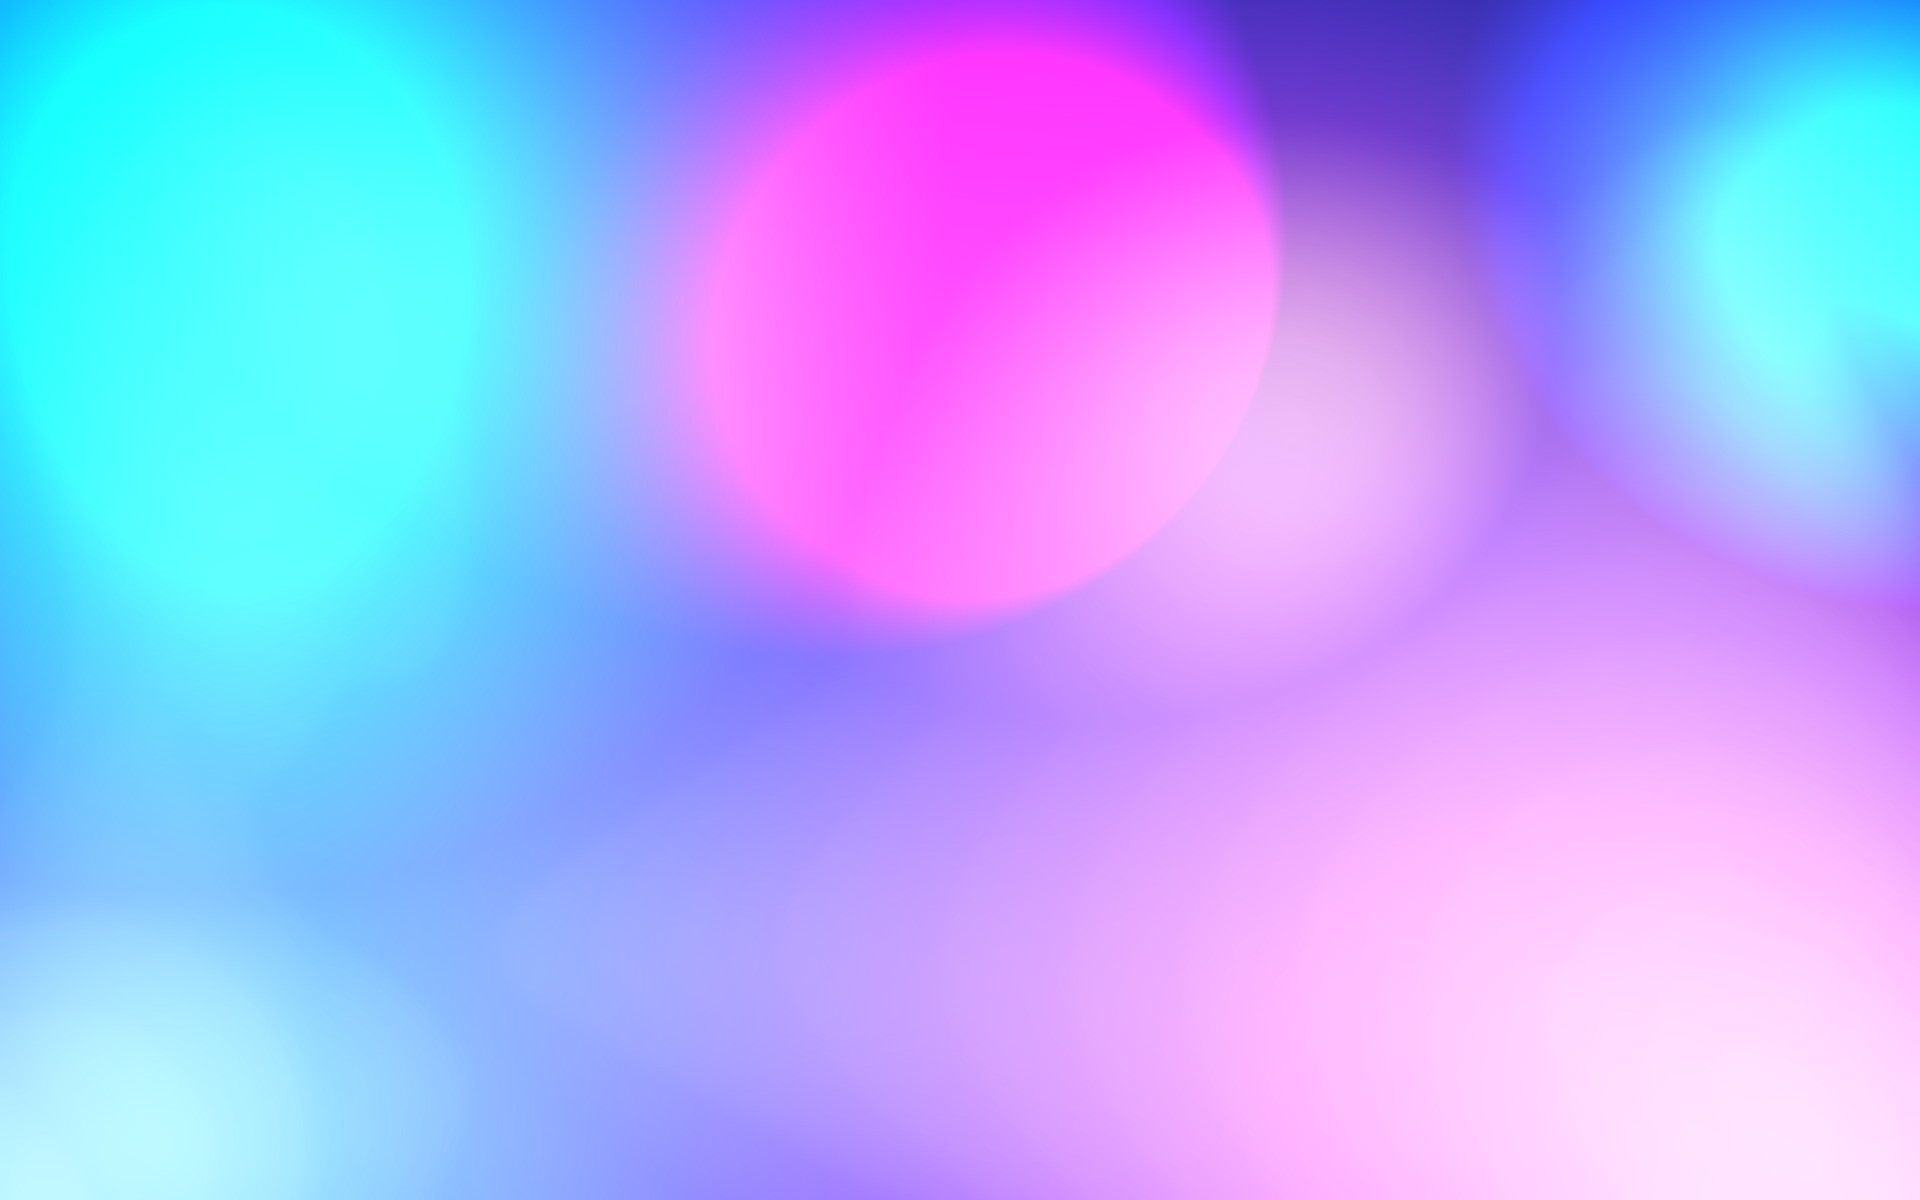 1920x1200 ... Wallpaper pink purple blue 3d cubes #dda0dd #ff69b4 #add8e6 90Â° 355px  ...